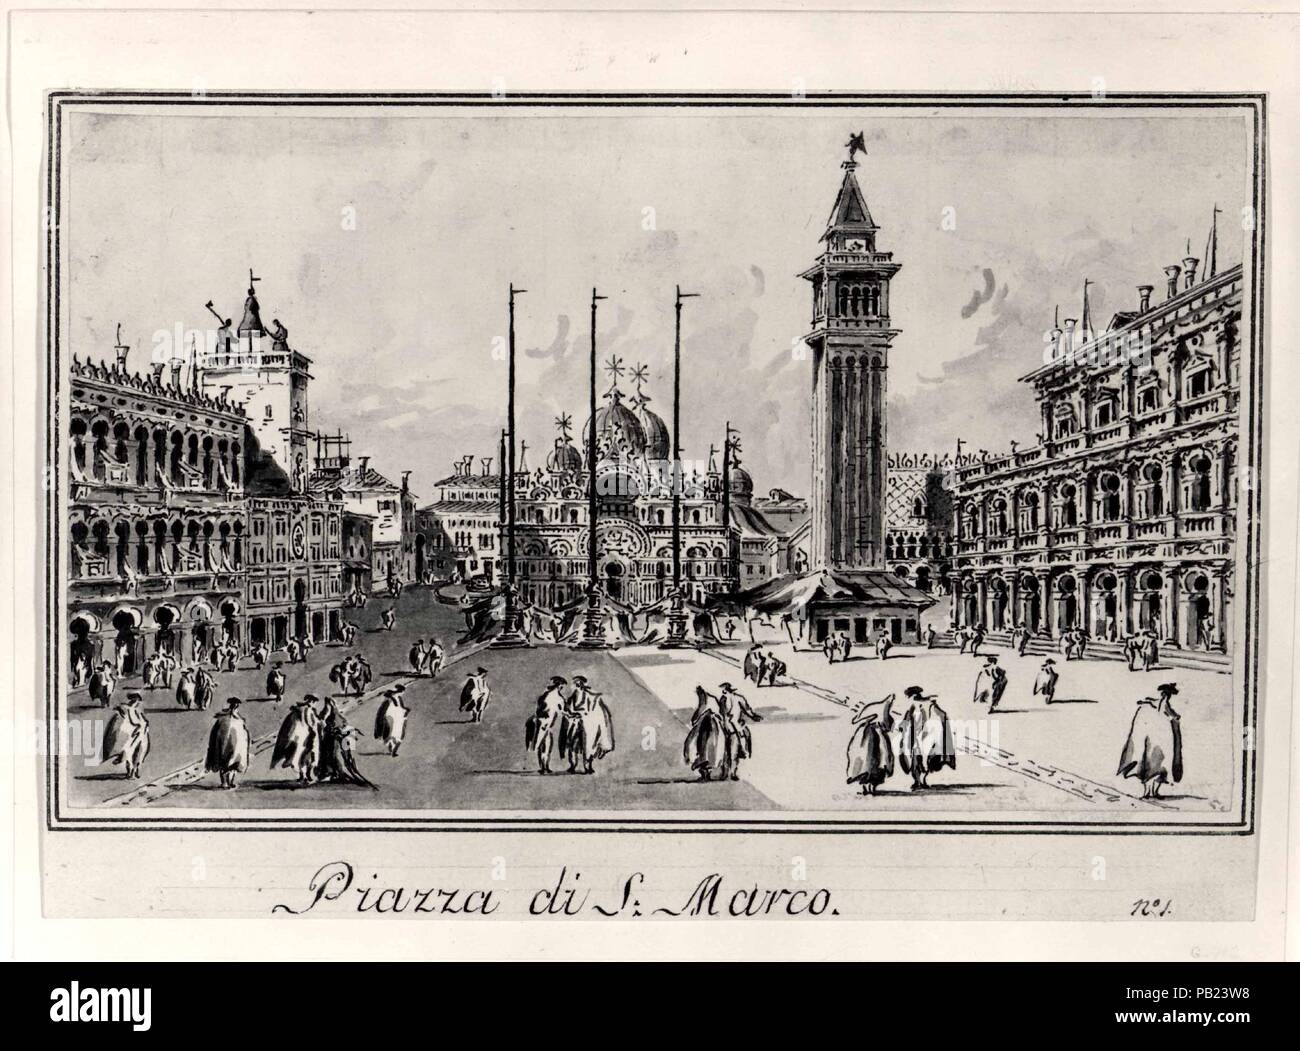 La Piazza San Marco, mirando hacia la basílica. Artista: Giacomo Guardi (Italiano, Venecia Venecia 1764-1835 (?) (?)). Dimensiones: 4 15/16 x 8 3/8 in. (12,5 x 21,2 cm). Fecha: ca. 1804-28. Este es uno de una serie de dibujos en lápiz y tinta y lavado de gris, que formó parte de un álbum vivienda cuarenta y ocho vistas de Venecia y las islas de los alrededores. Reconociendo el incentivo del mercado para producir dibujos bastante prosaico como recuerdos para turistas, Giacomo hicieron muchos de esos álbumes, repitiendo las composiciones según sea necesario. La vista de la Piazza San Marco, en el que comienza la serie numerada, Foto de stock